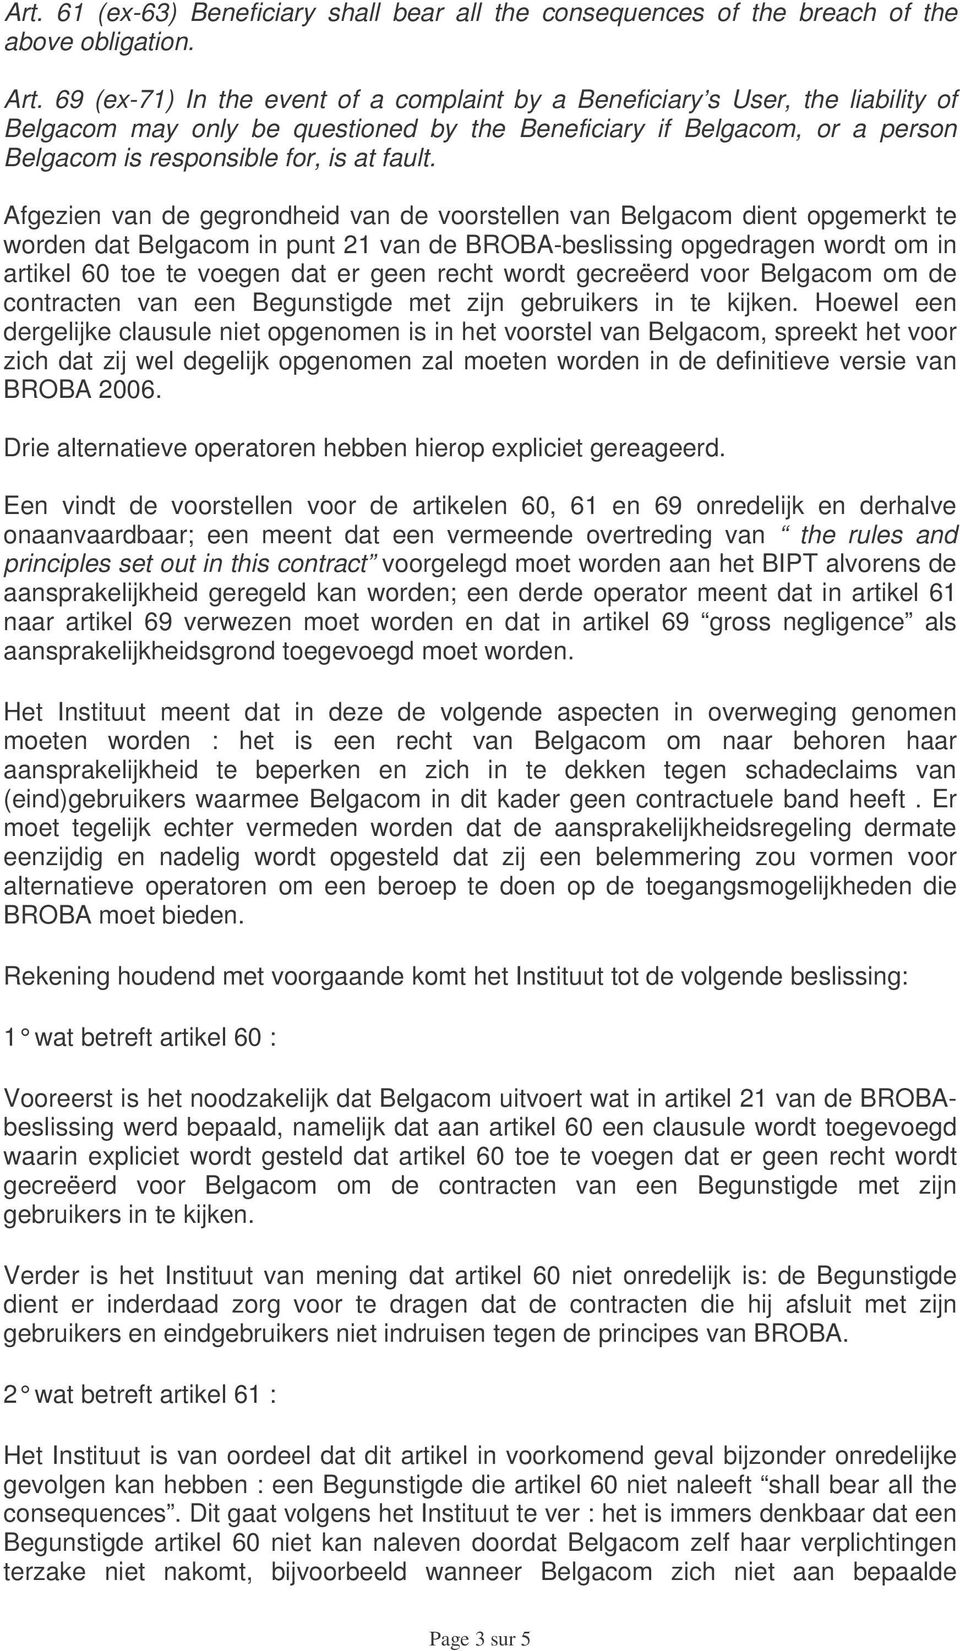 Afgezien van de gegrondheid van de voorstellen van Belgacom dient opgemerkt te worden dat Belgacom in punt 21 van de BROBA-beslissing opgedragen wordt om in artikel 60 toe te voegen dat er geen recht